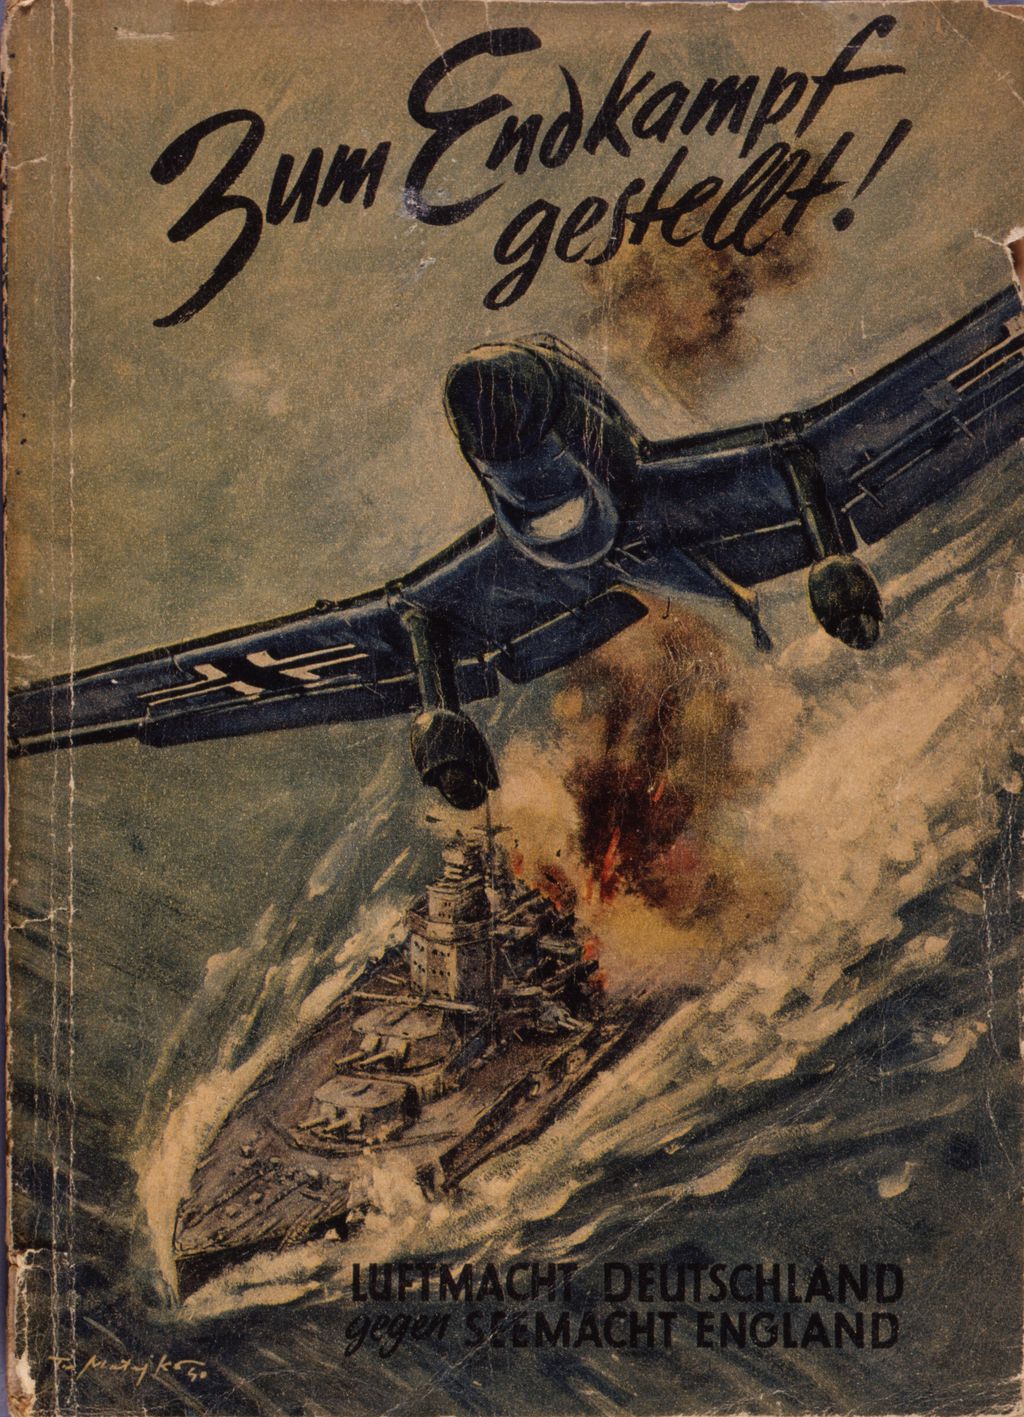 Exponat: Broschüre: "Zum Endkampf gestellt!", 1940